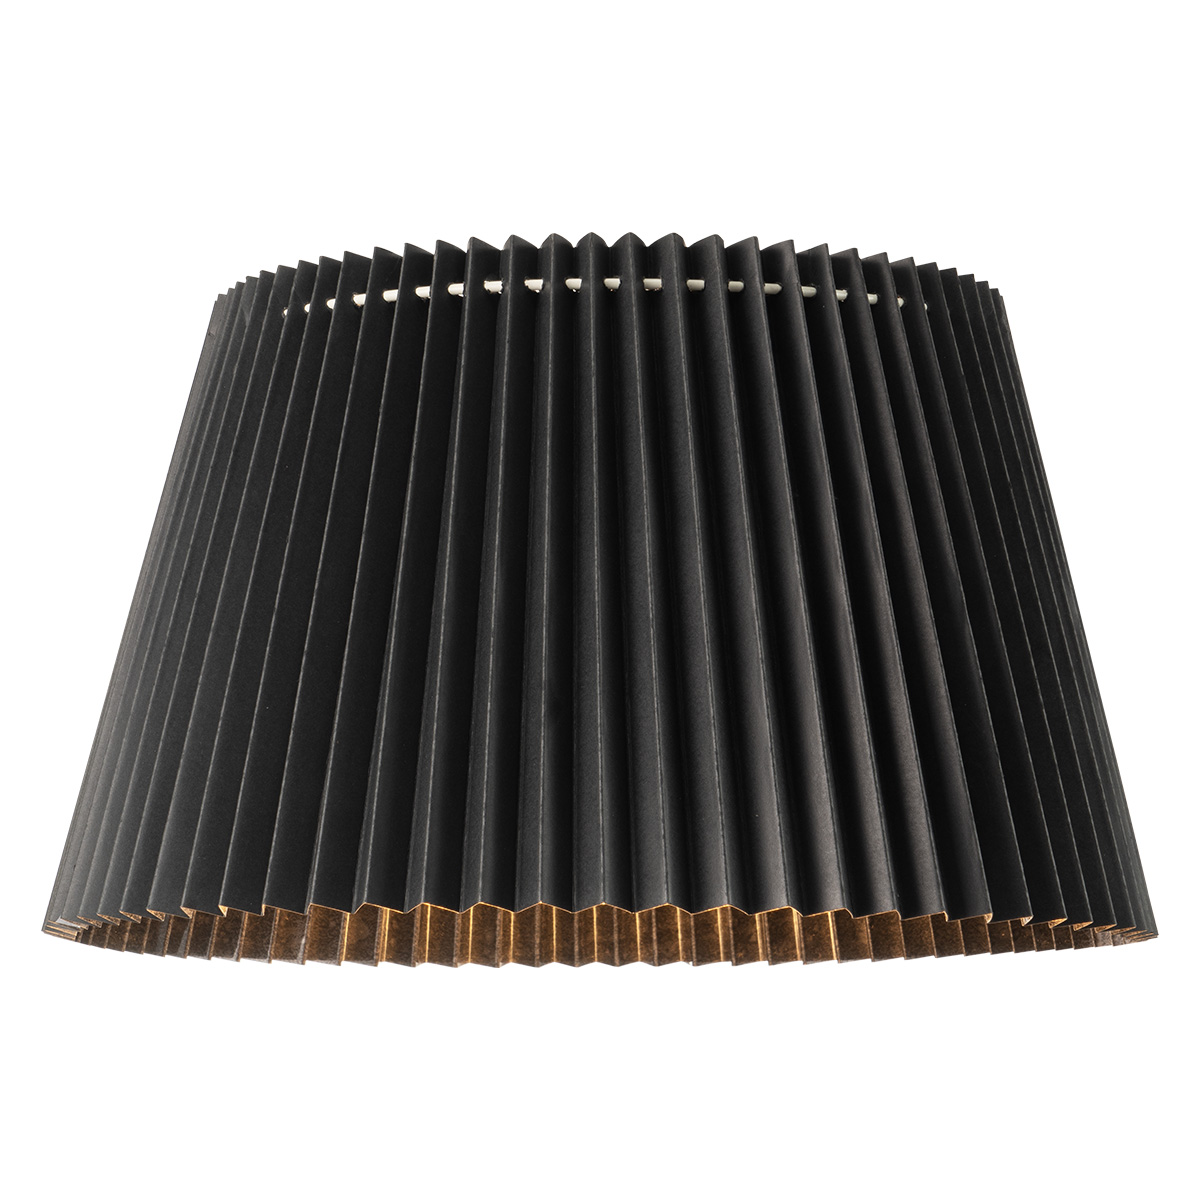 Tangla Lighting - Lampshade - metal and paper - black - taper - diameter 40cm - E27